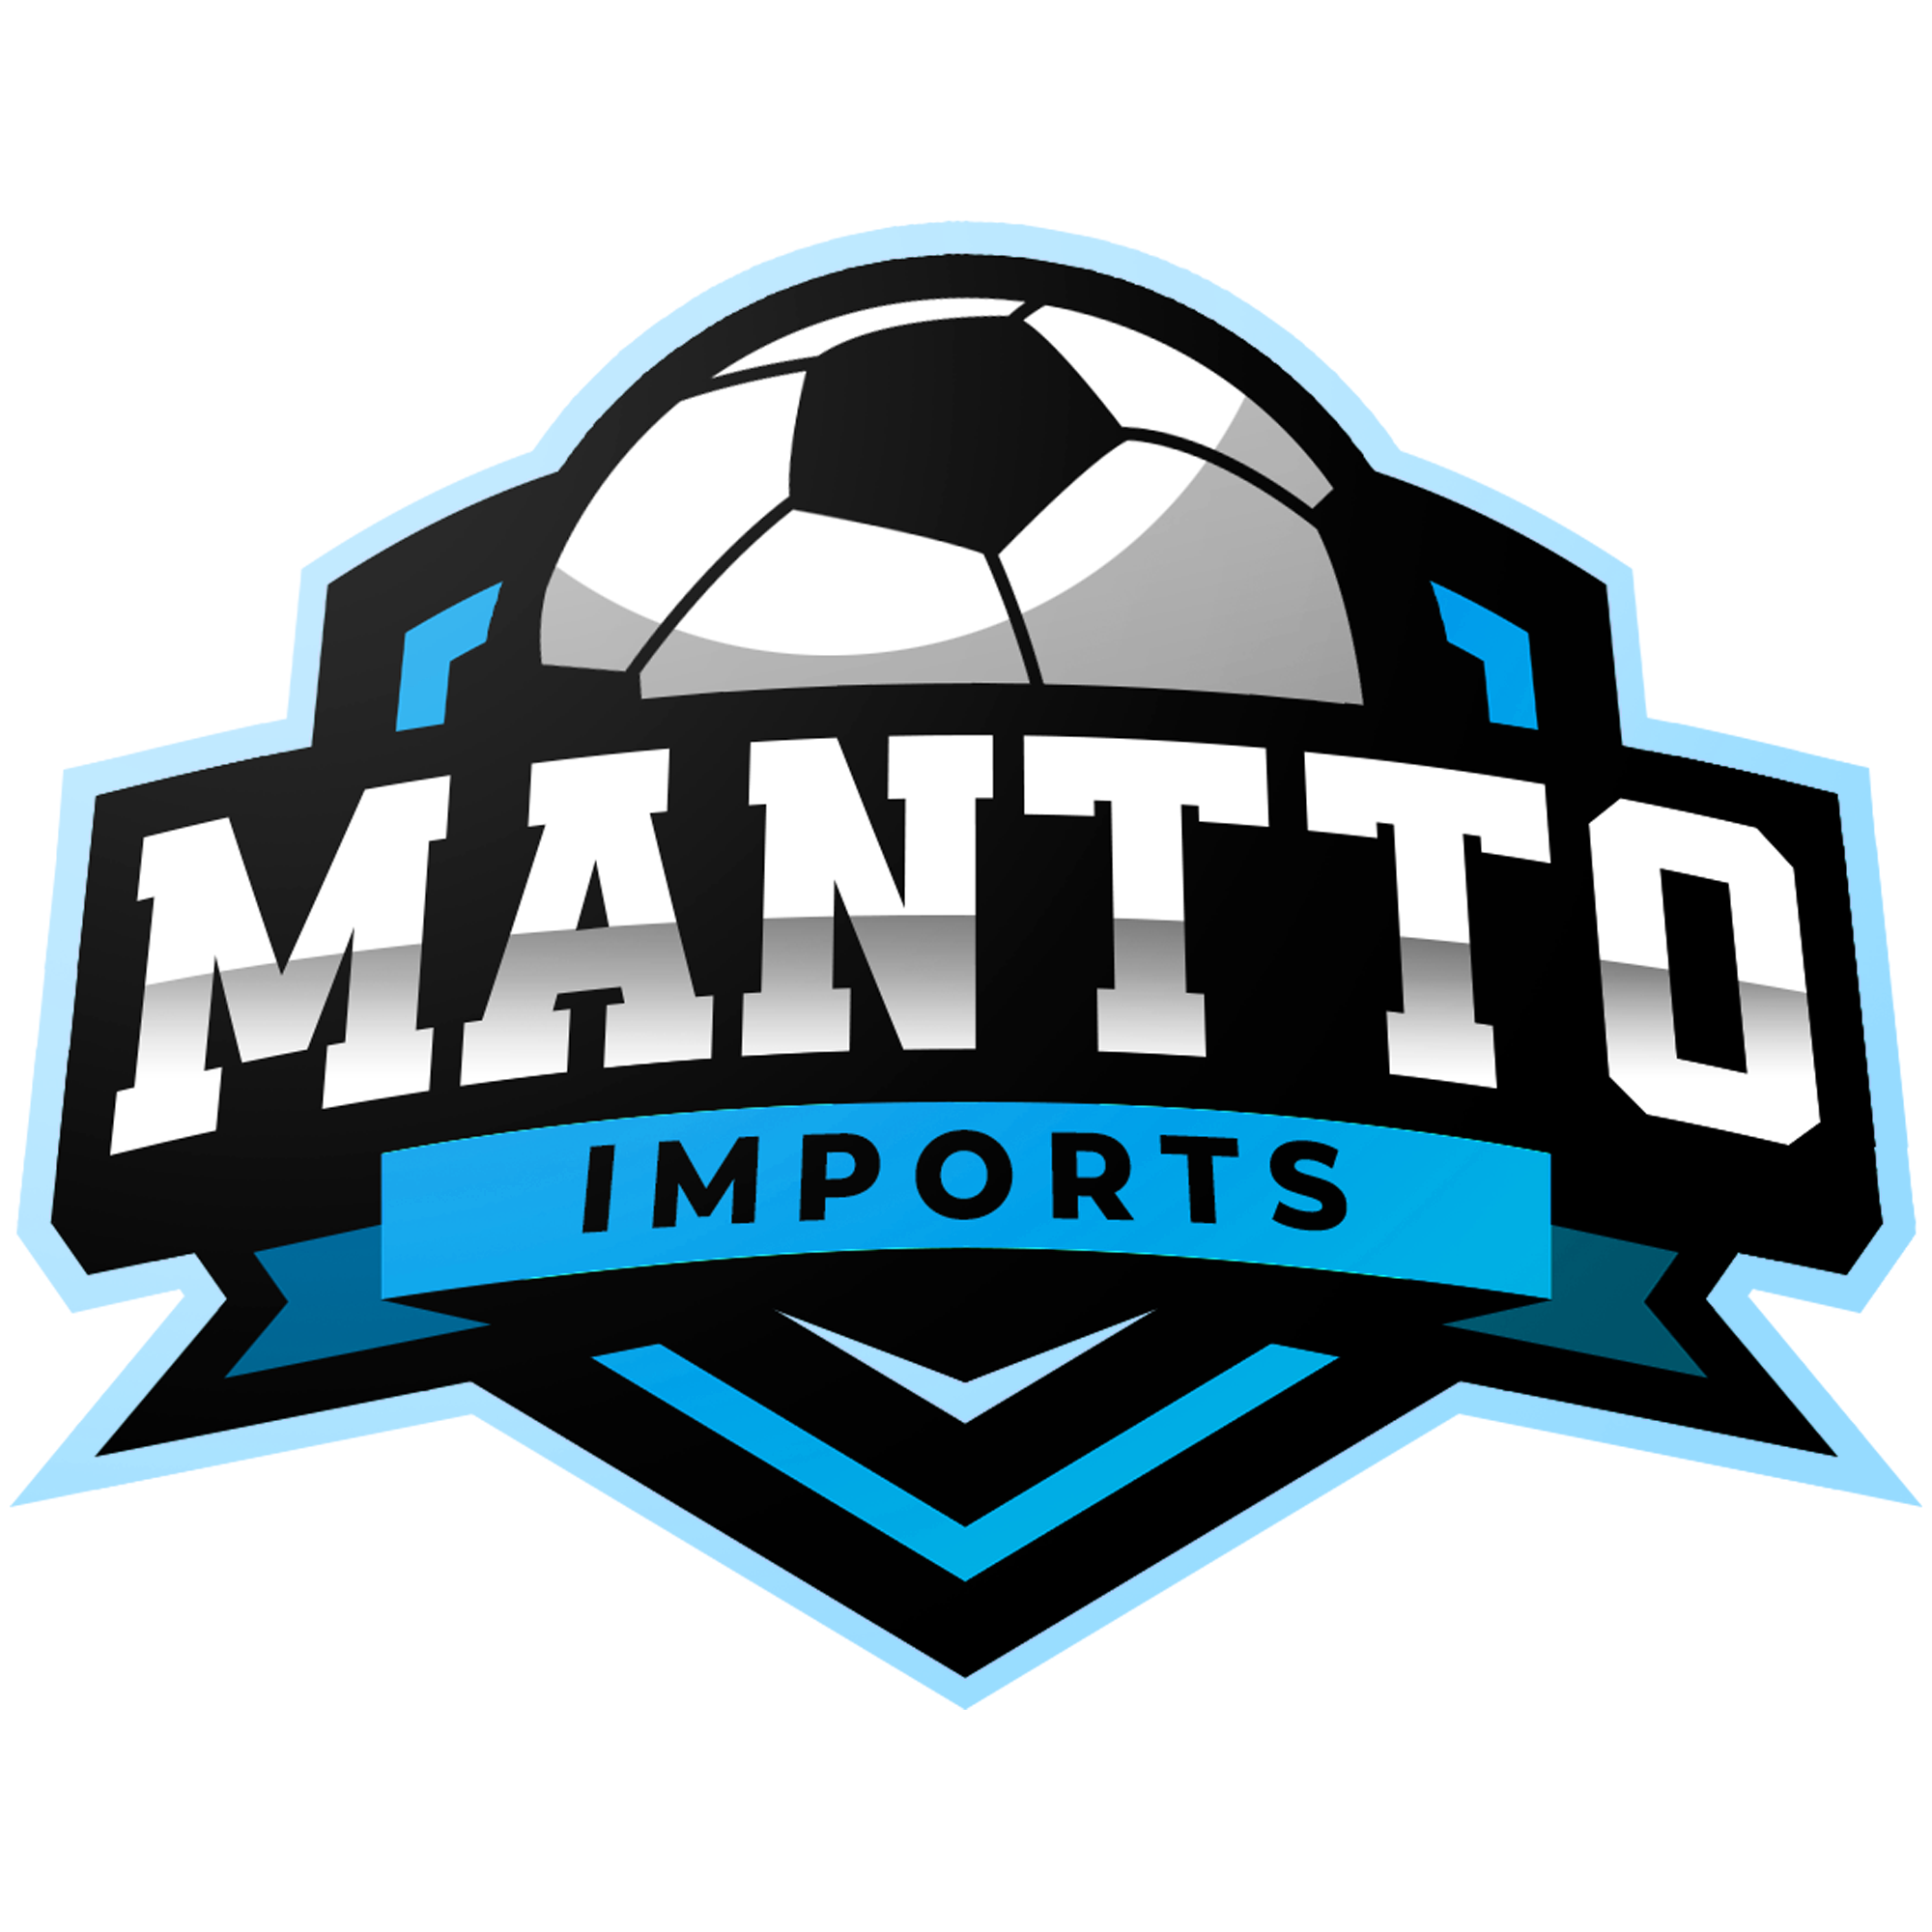 Mantto Imports | Artigos Esportivos